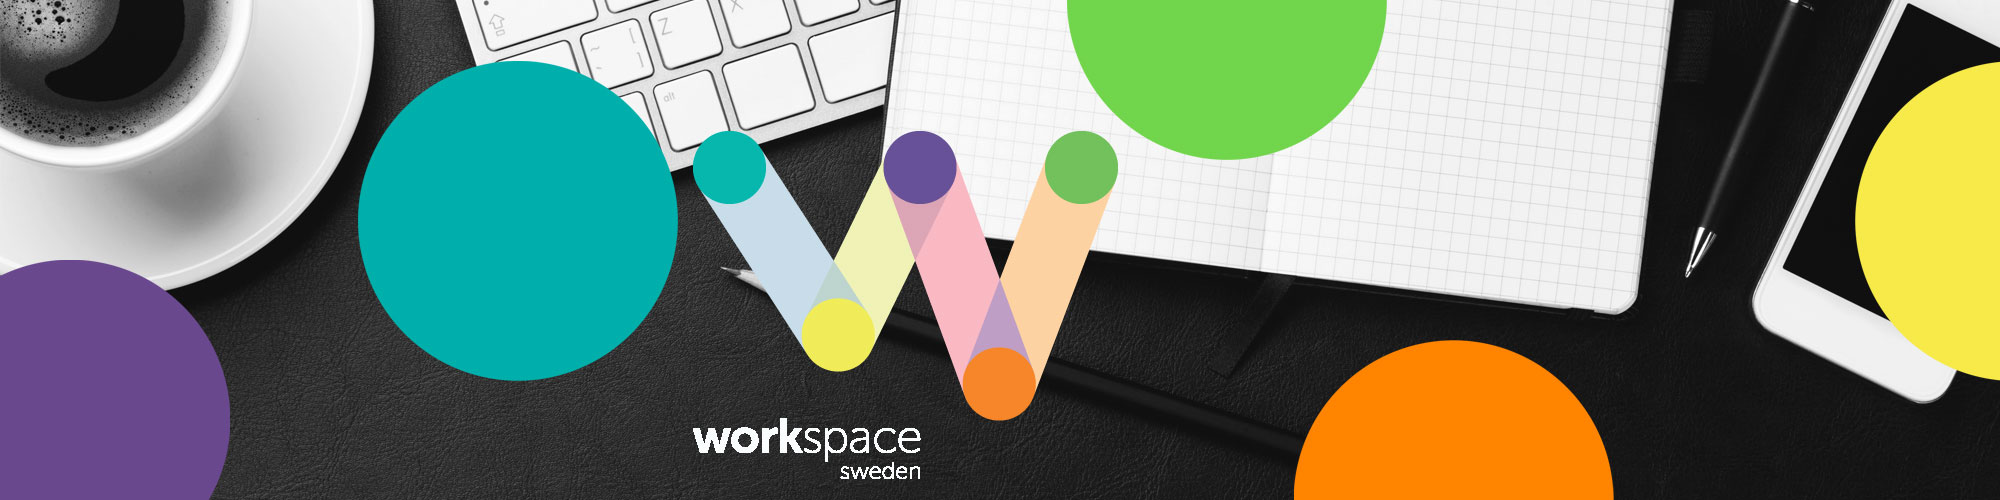 Header image for WorkSpace Sweden